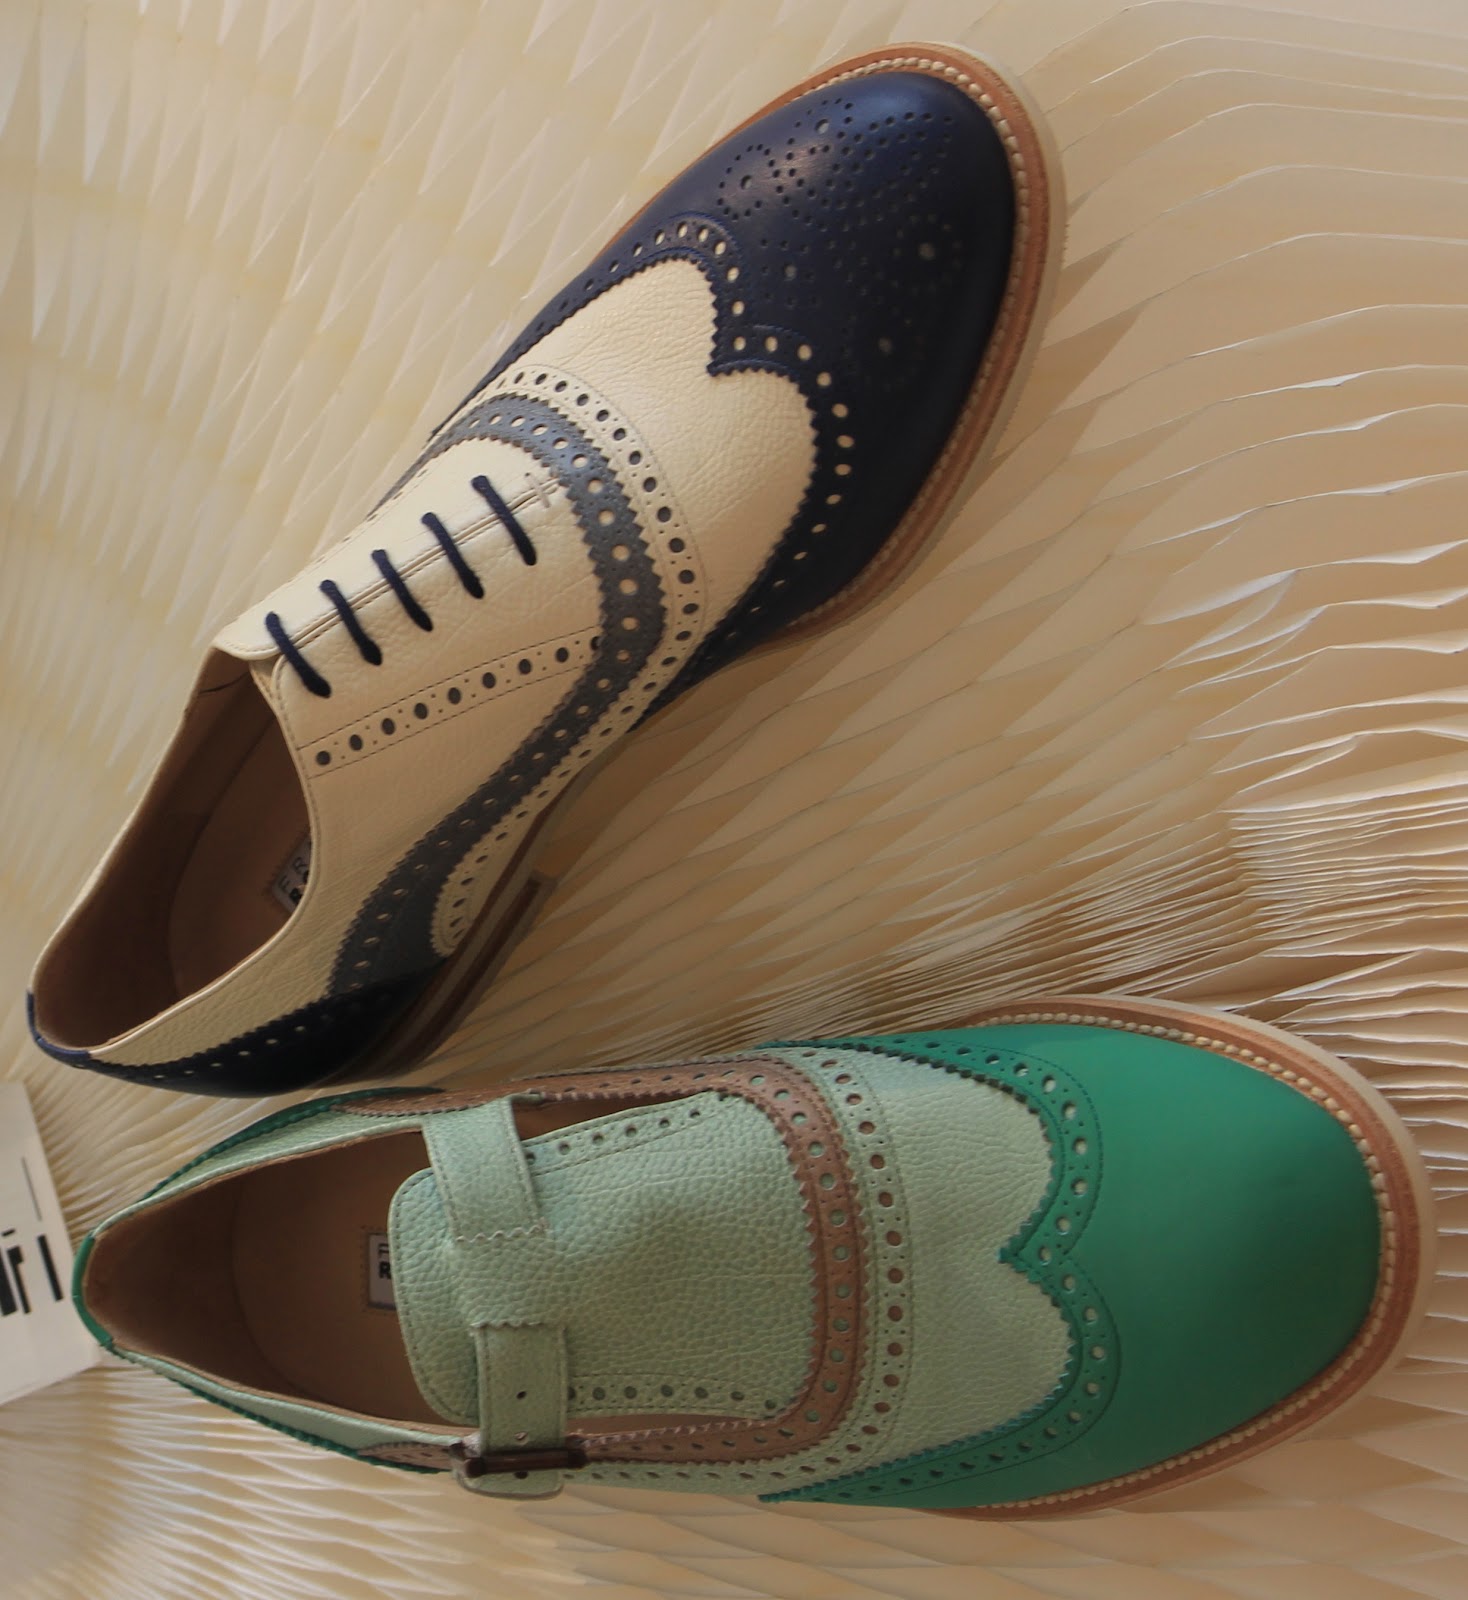 LYRA MAG.: FRATELLI ROSSETTI SPRING/SUMMER 2013 Men's/Women's Shoes ...